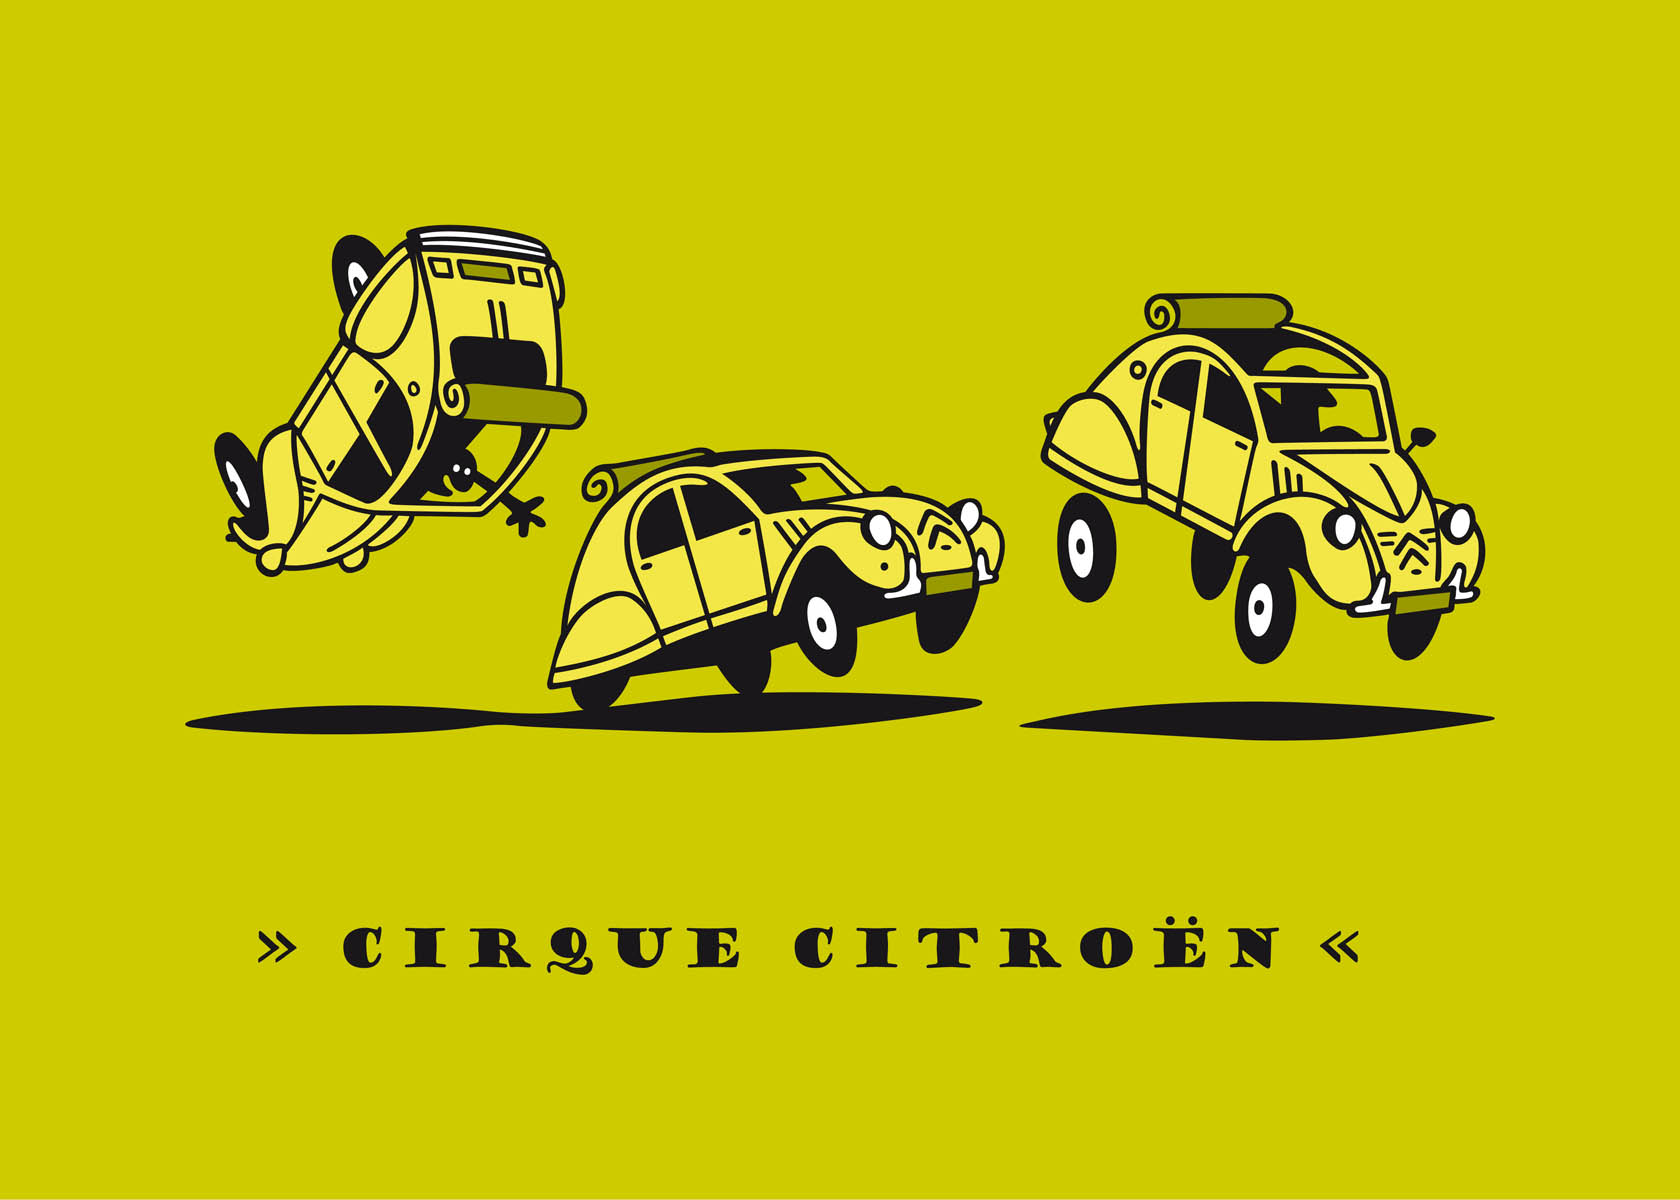 Cirque Citroën